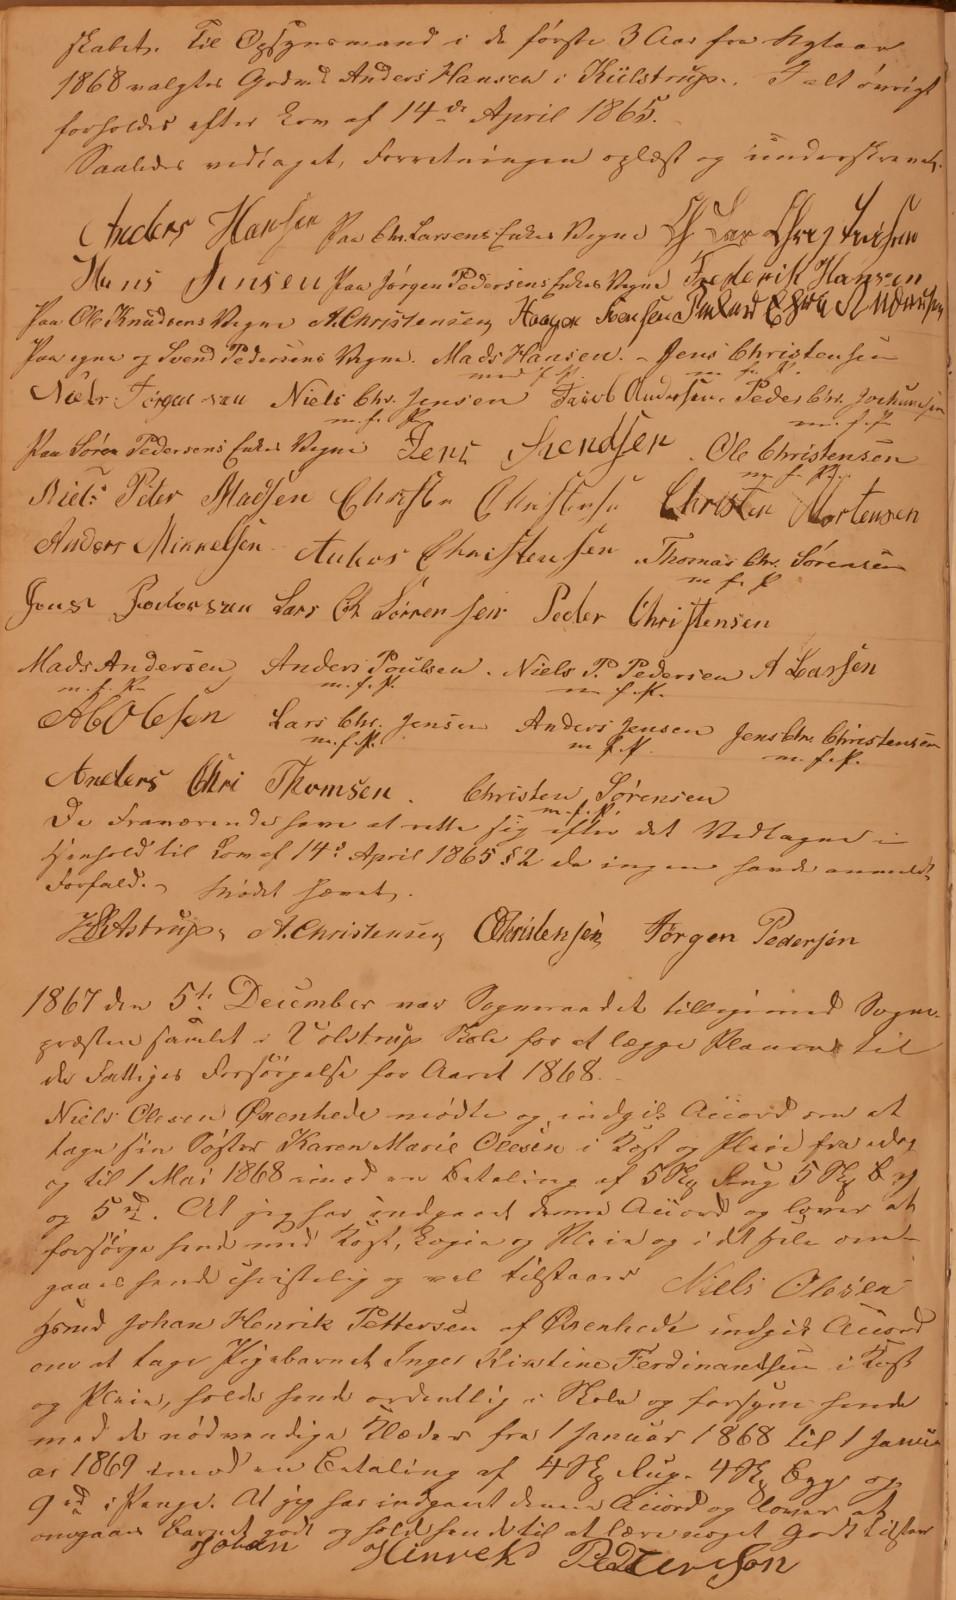 Side 101 B skabet. Til Opsynsmand i de første 3 Aar fra Nytaar 1868 valgtes Grdmd Anders Hansen i Kiilstrup. I alt øvrigt forholdes efter Lov af 14 de April 1865.